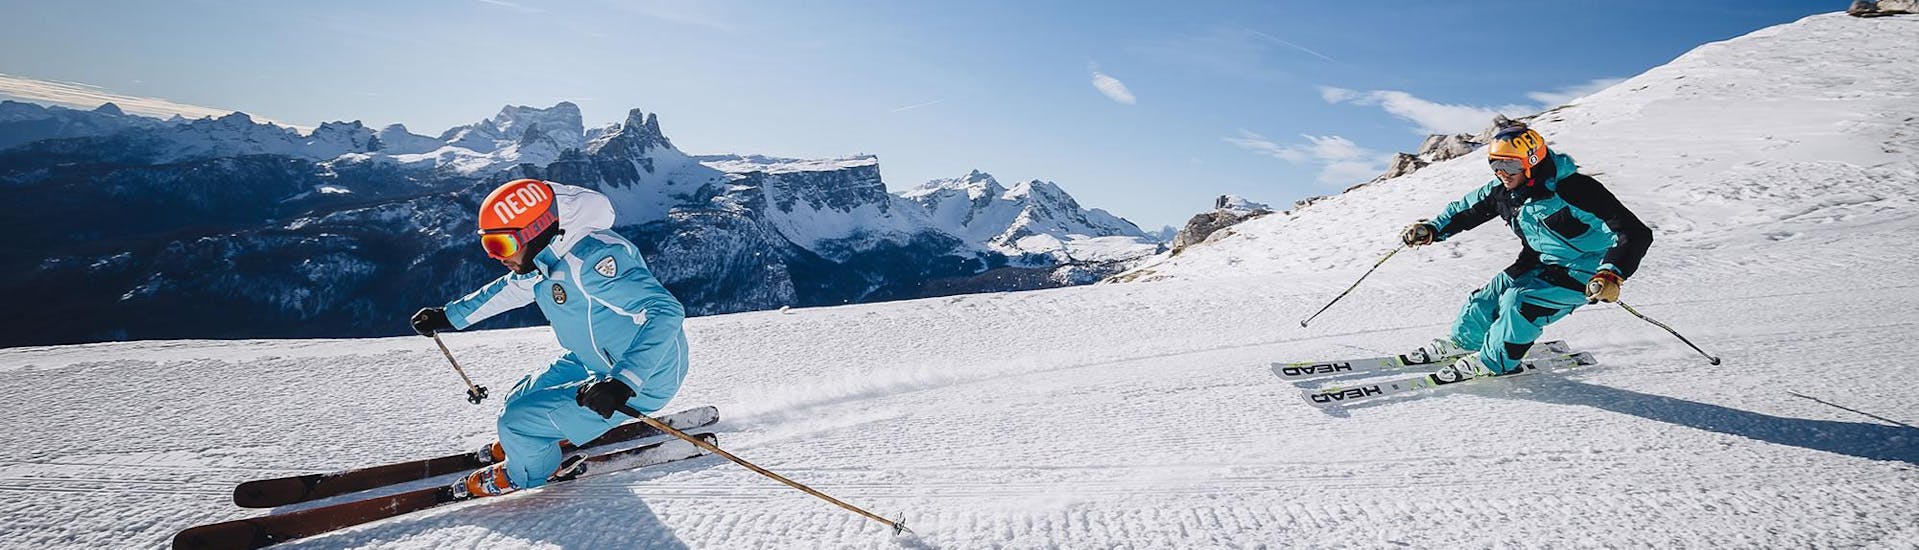 Un maestro di sci sta aprendo una delle piste del comprensorio sciistico di Cortina d'Ampezzo durante una delle lezioni private di sci per adulti - principianti, organizzate dalla scuola di sci Scuola di Sci e Snowboard Cristallo Cortina.